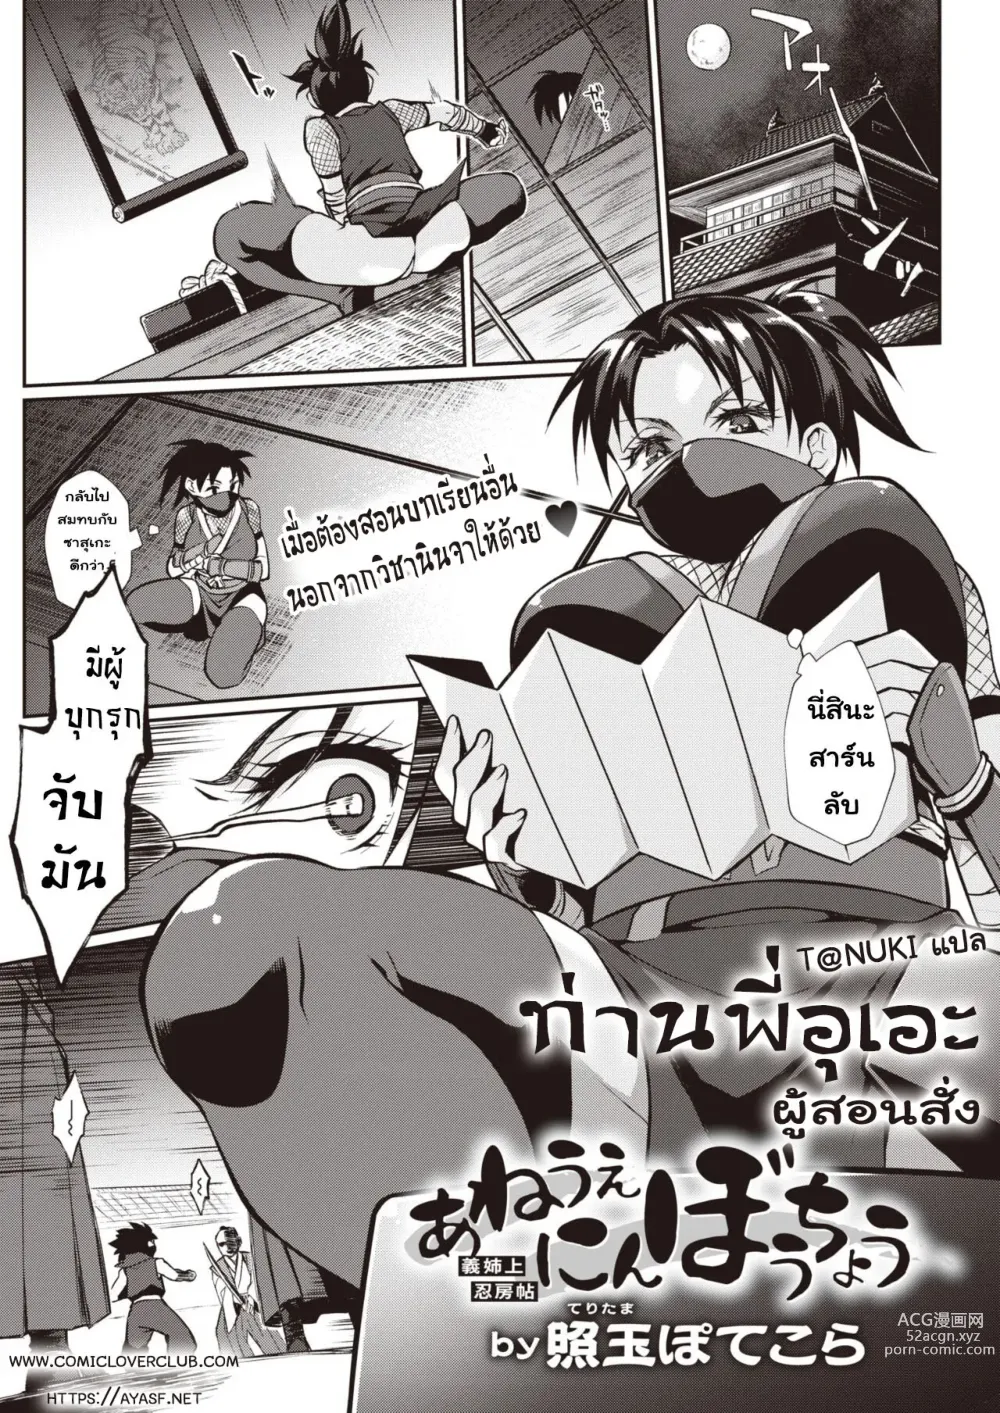 Page 1 of manga ท่านพี่อุเอะ ผู้สอนสั่ง